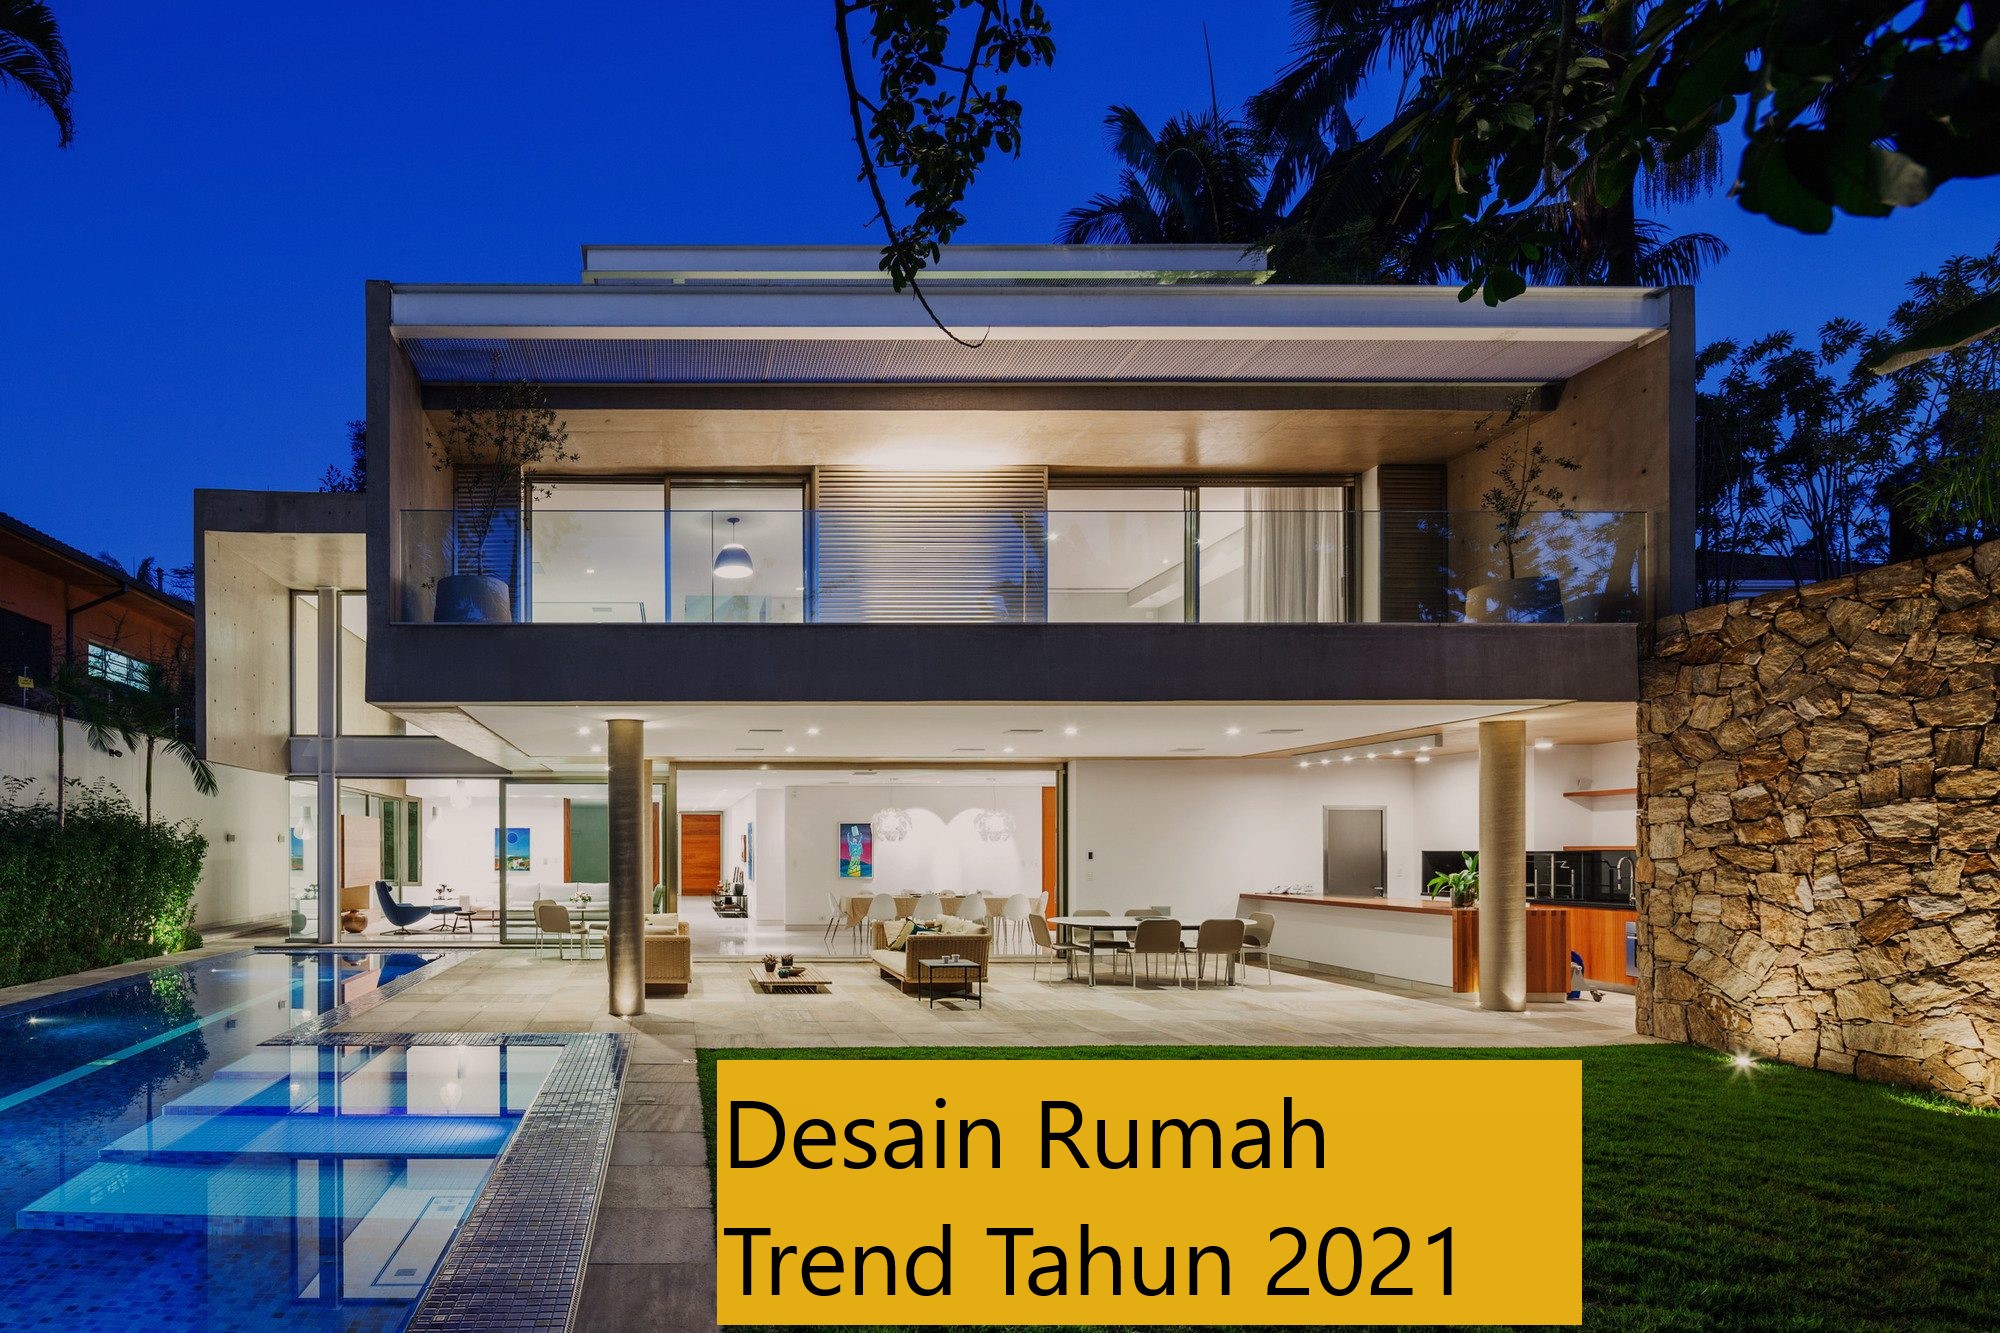 Desain Rumah Trend Tahun 2021